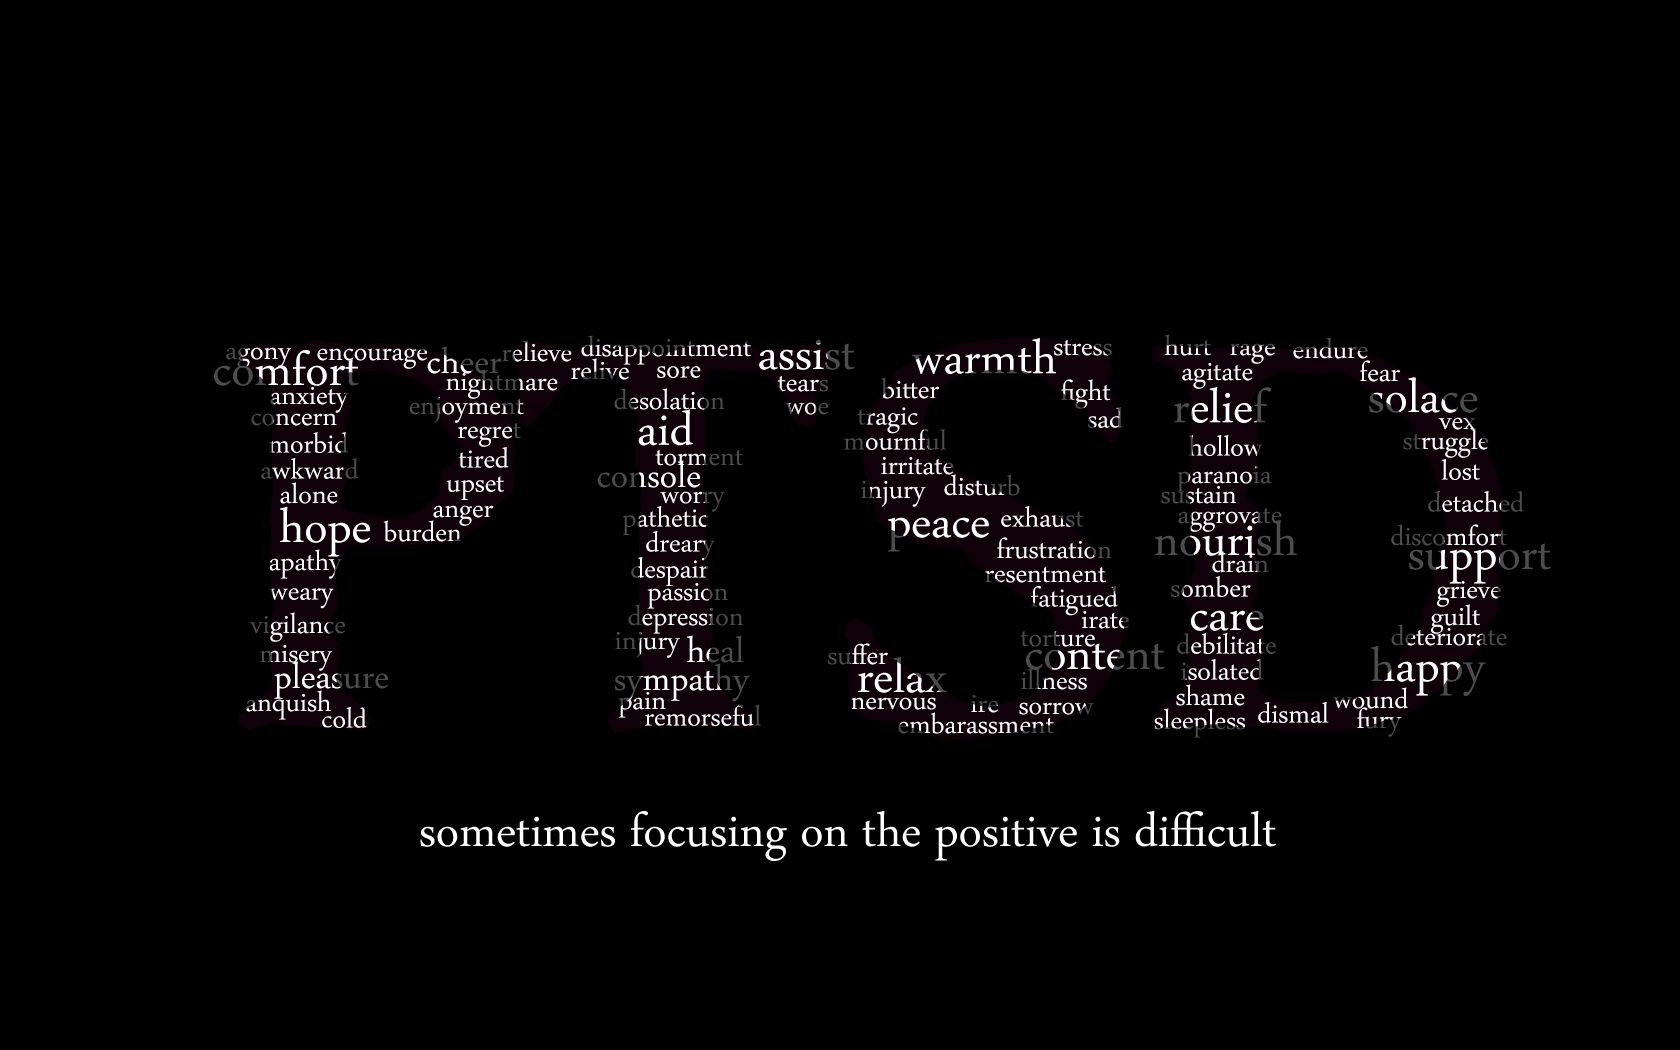 VA | PTSD